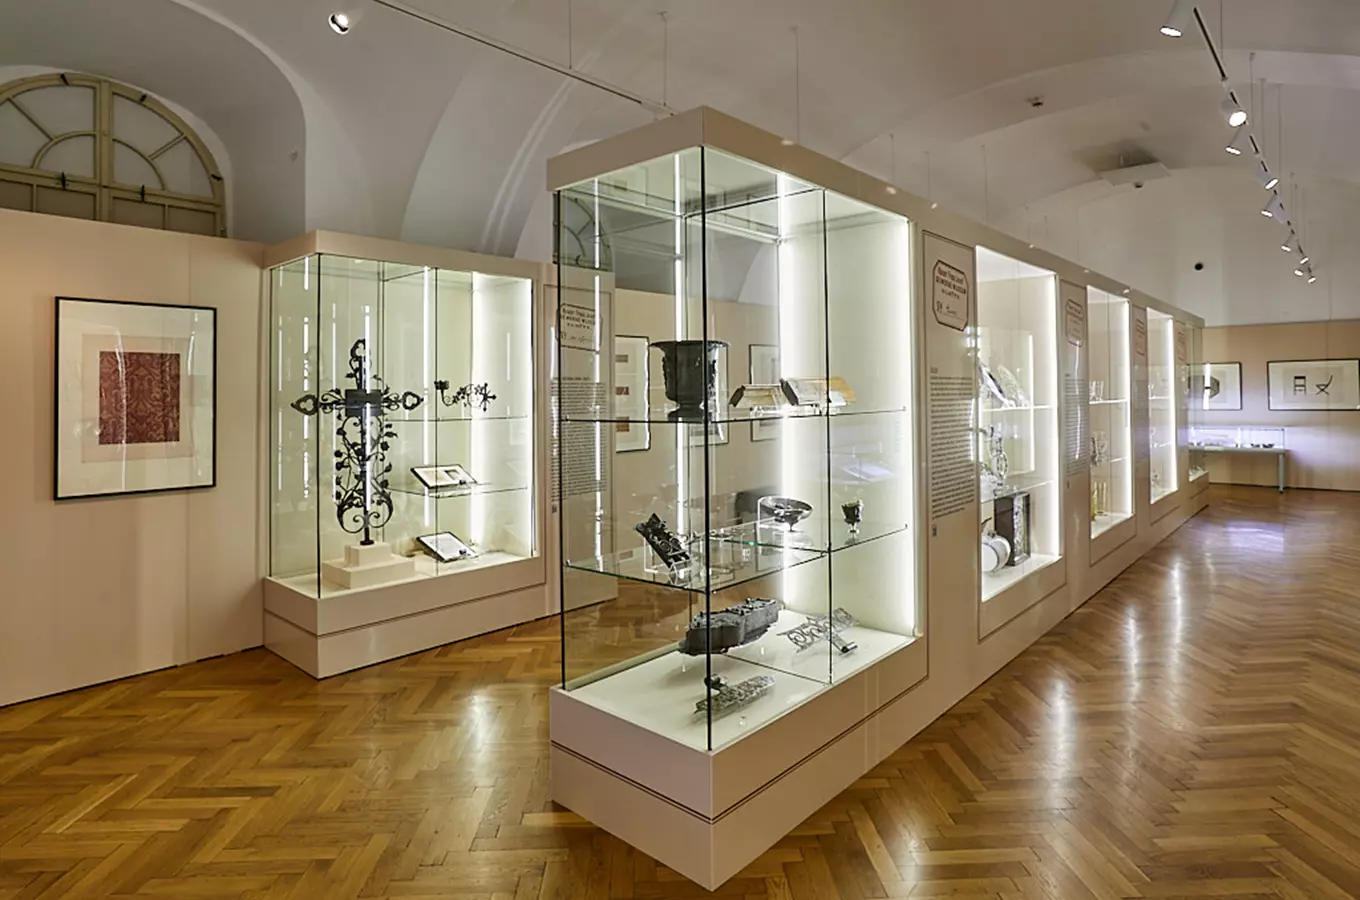 Výstava Průmyslové muzeum císaře Františka Josefa v Olomouci